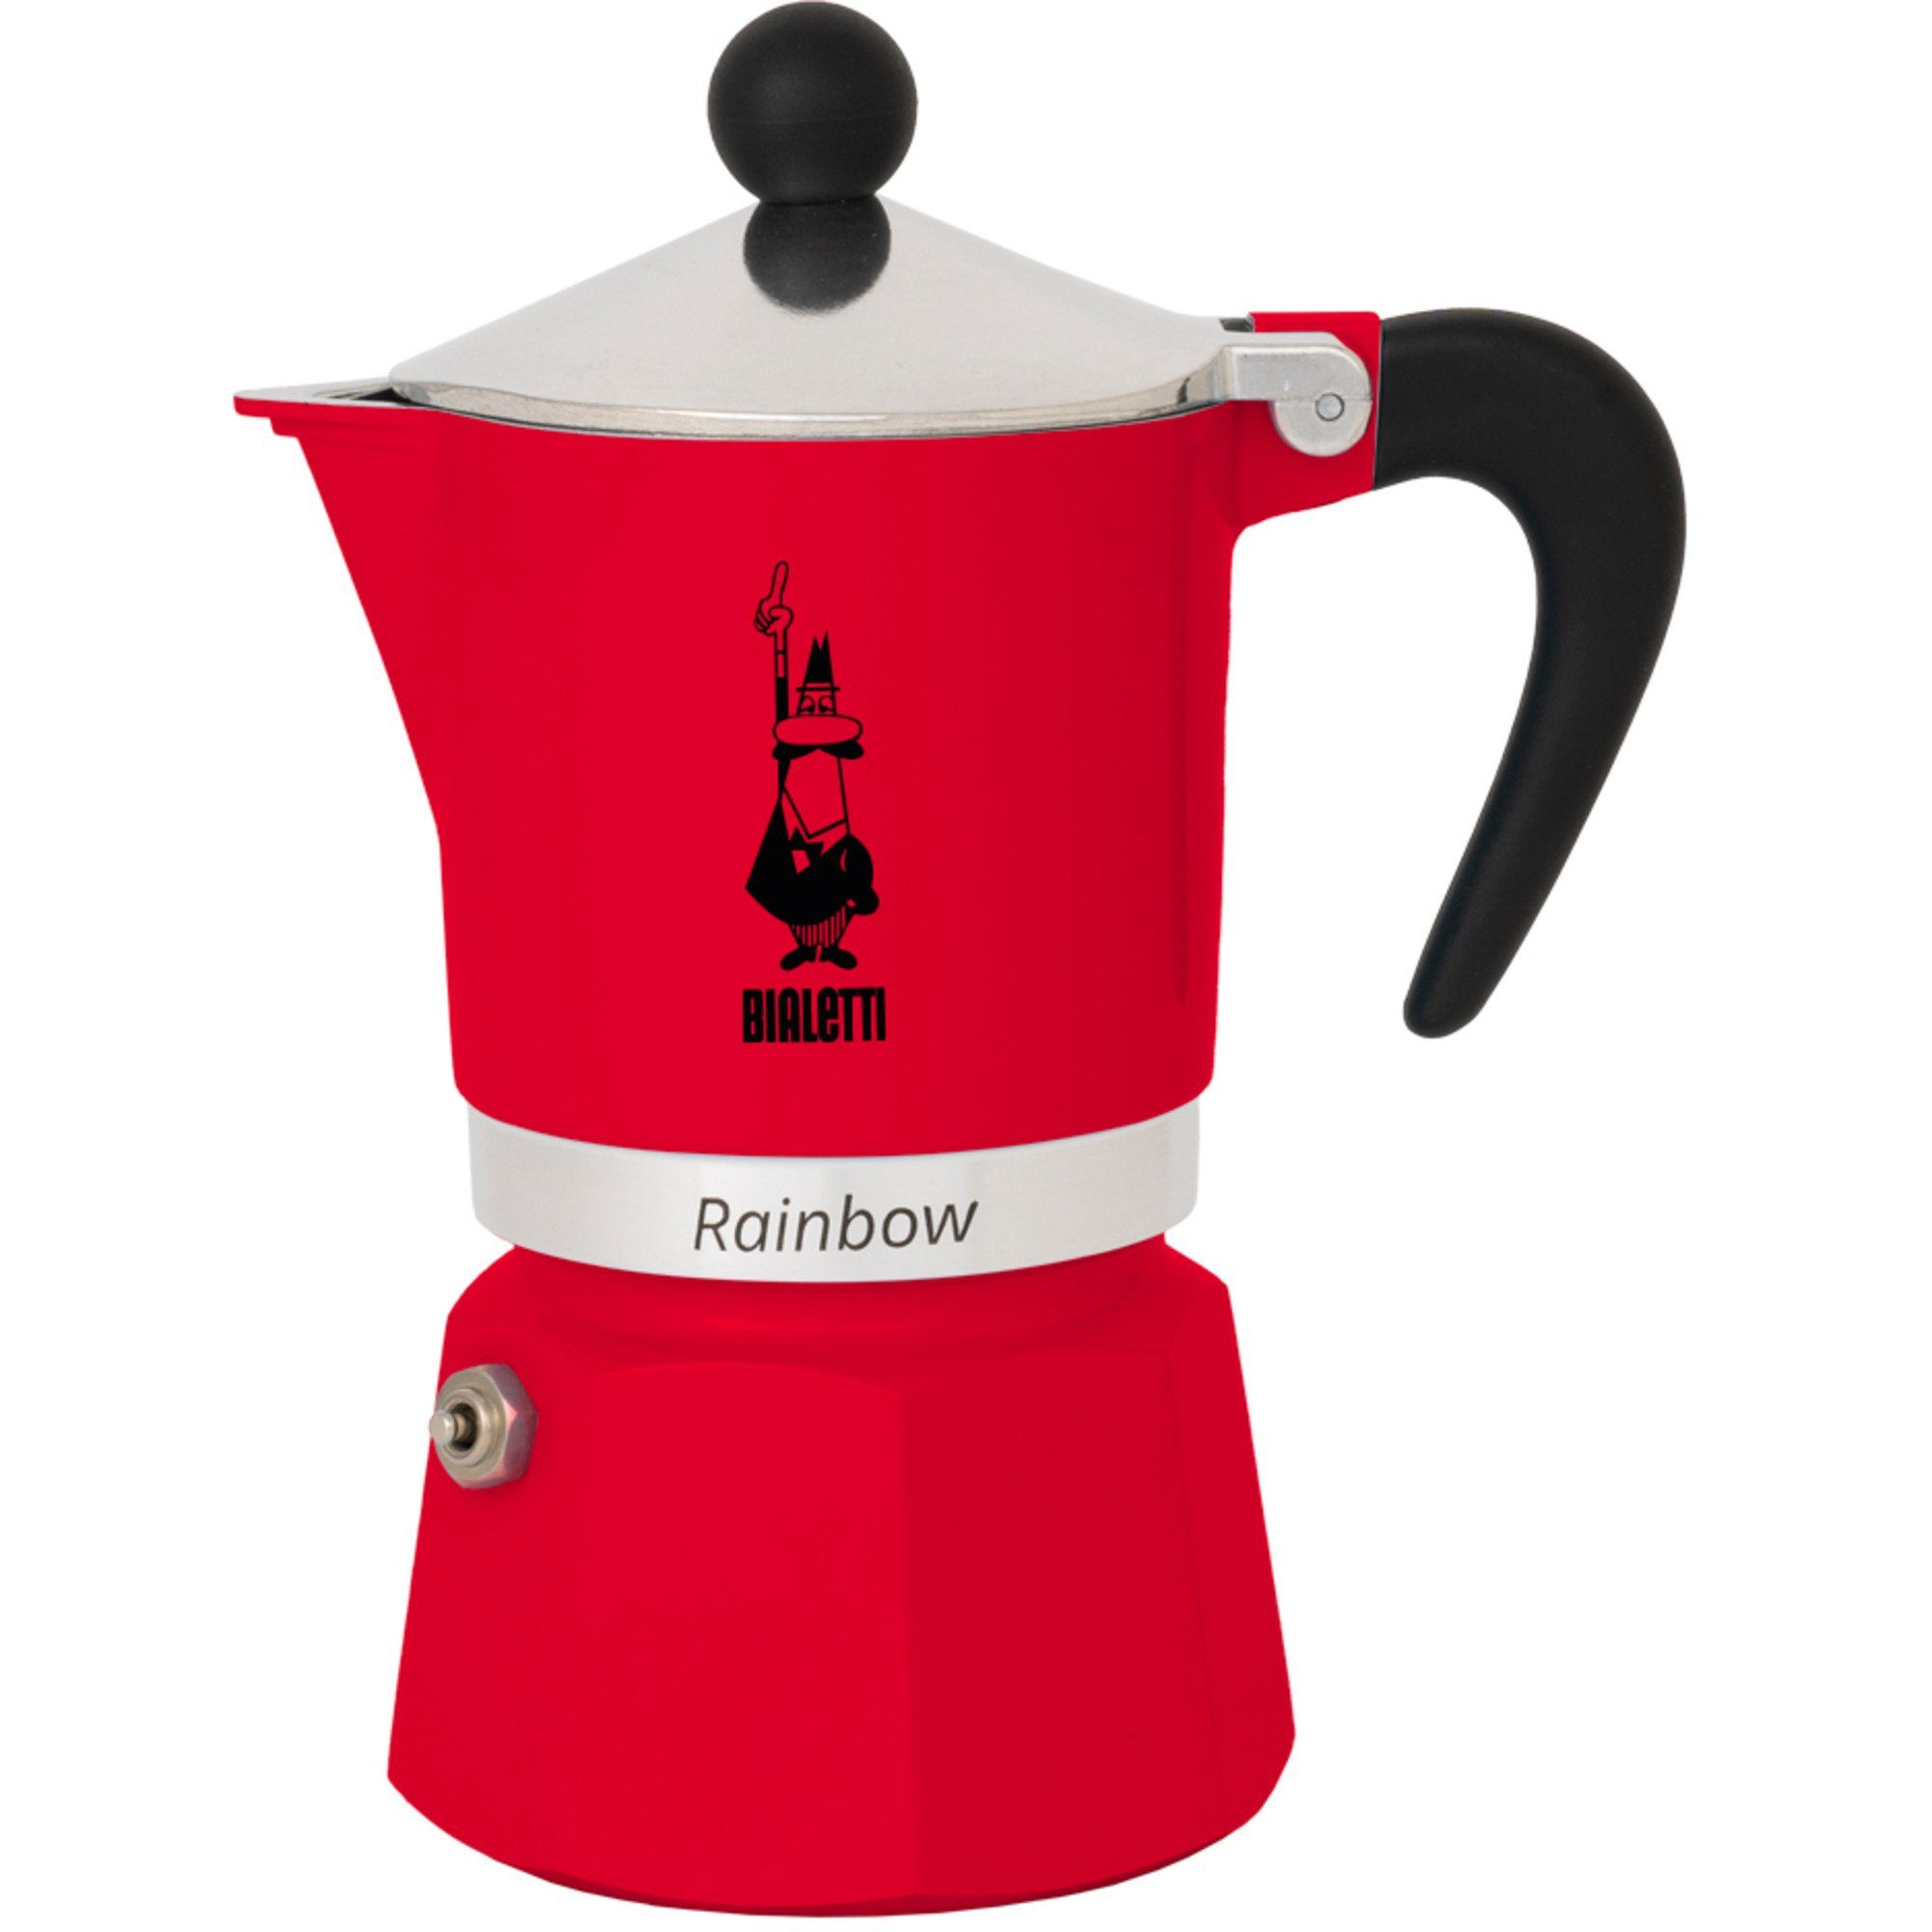 Perfekte Qualität, günstiger Preis! BIALETTI Kaffeebereiter Espressomaschine, Rainbow, Tassen) Bialetti (6